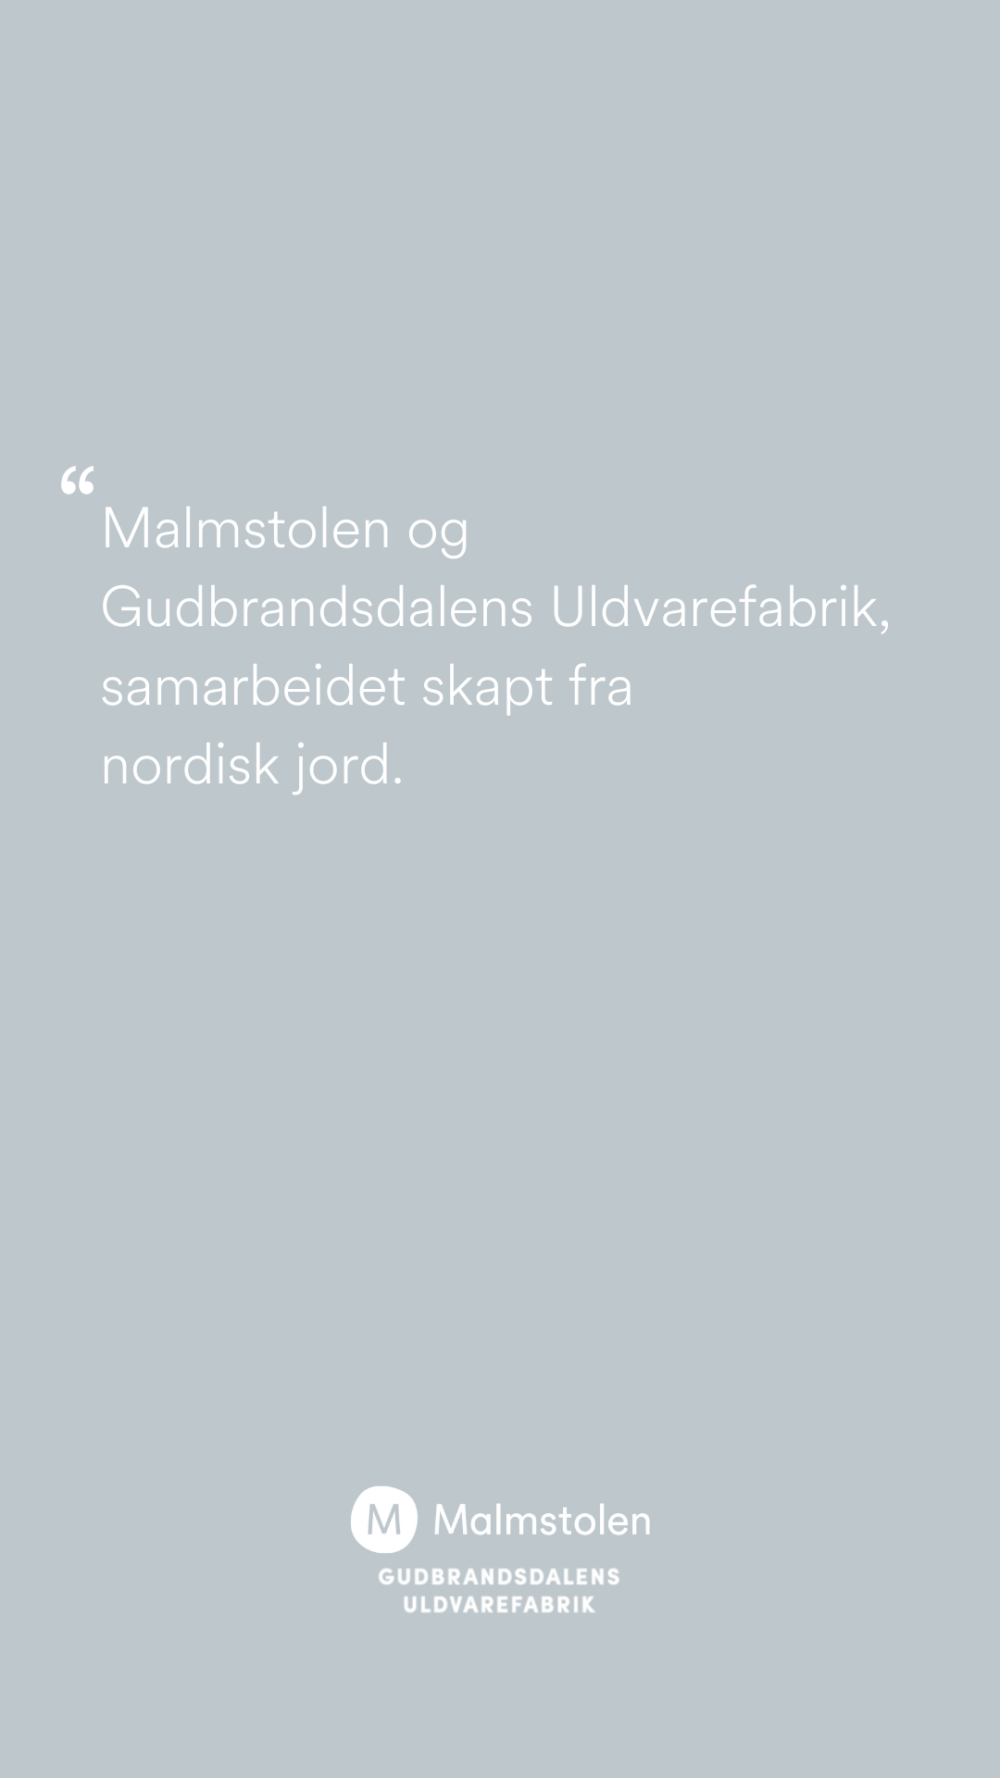 Tekst - Malmstolen og Gudbrandsdalens Uldfabrik, samarbeidet skapt fra nordisk jord.